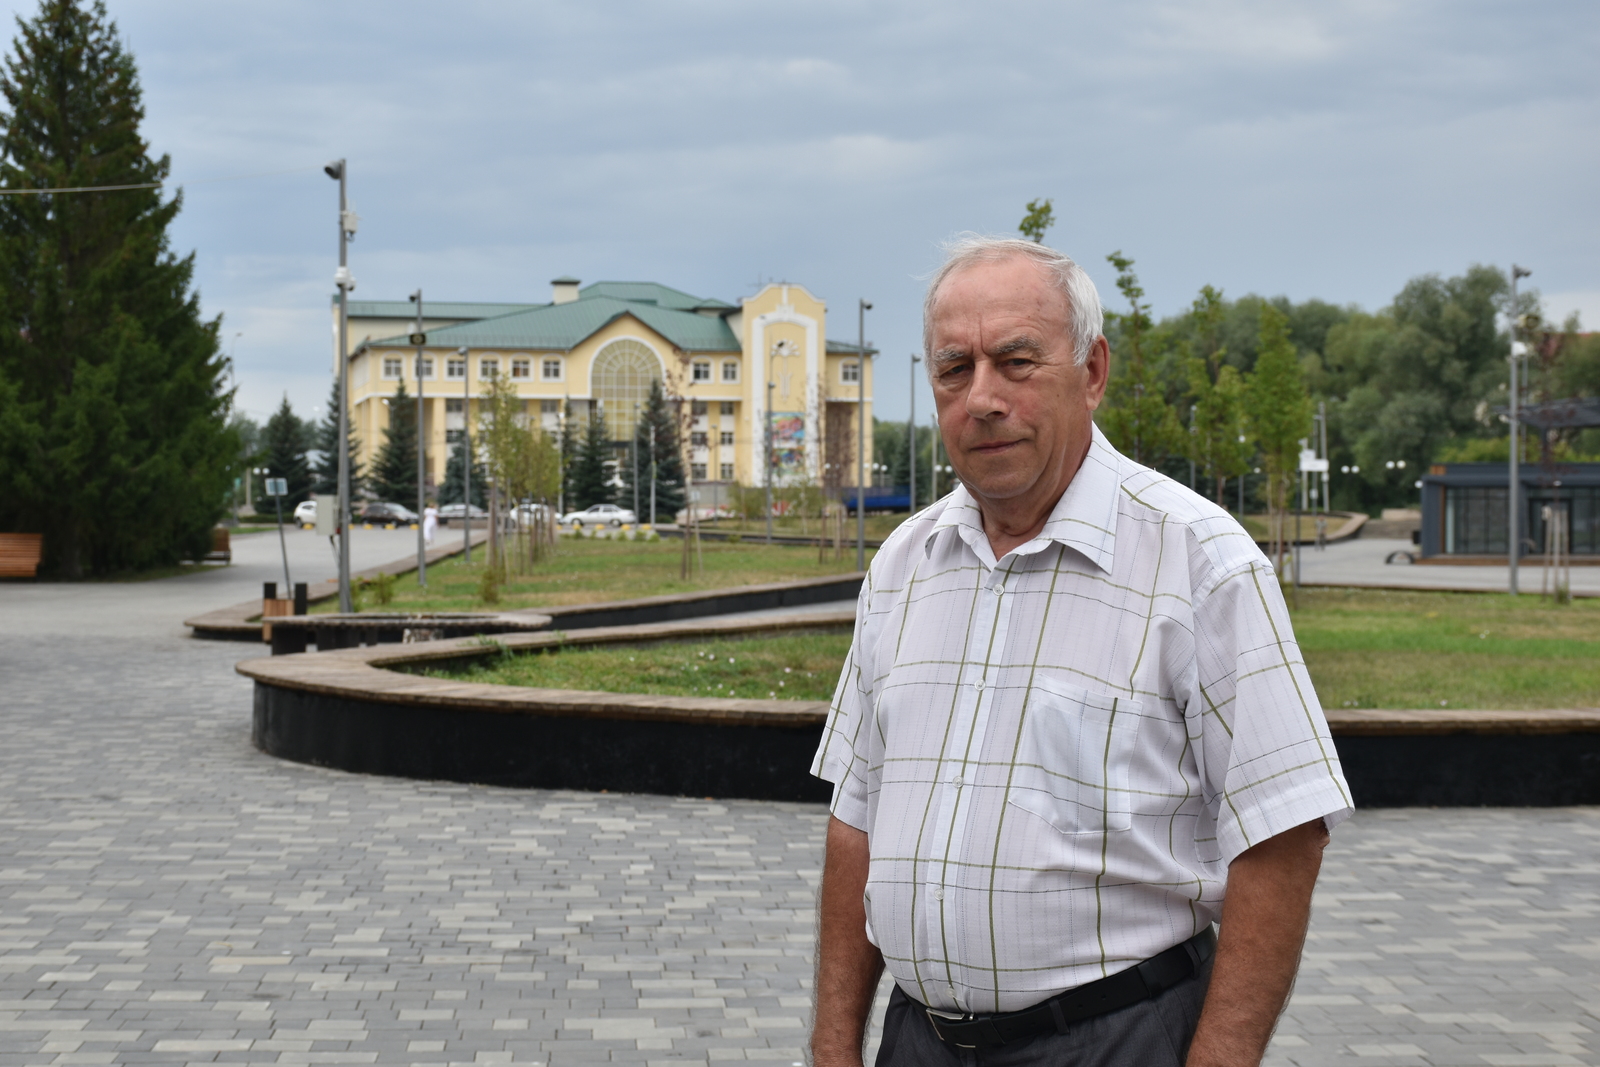 Геннадий Касьянов из Мелеузовского района всю жизнь посвятил строительной отрасли